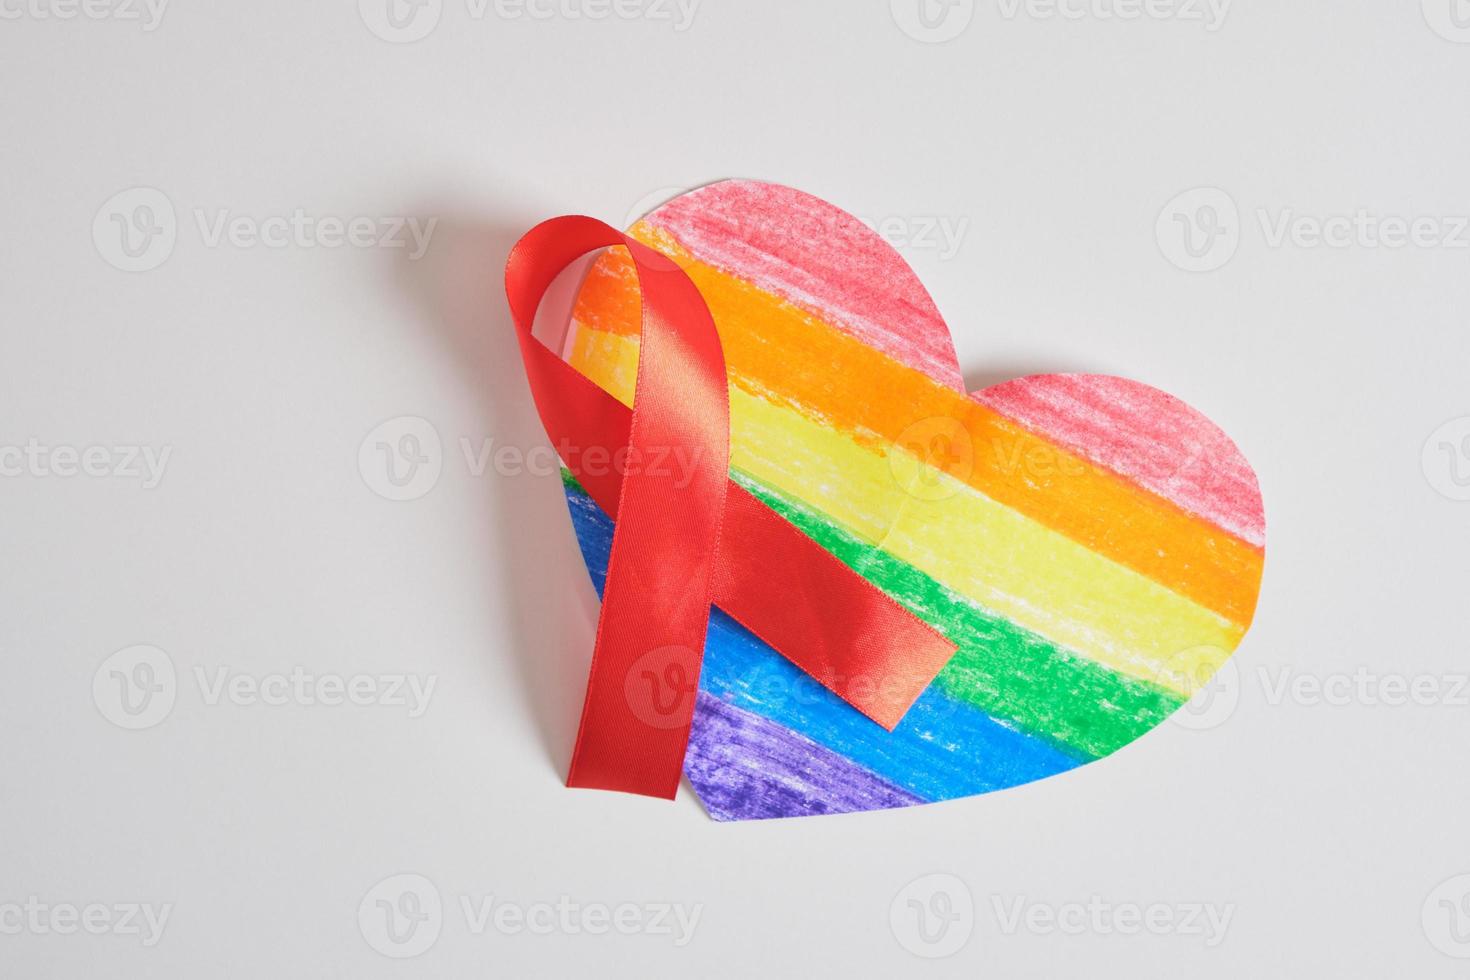 pare de aids, conceito de hiv. fita vermelha contra o coração com as cores do orgulho da bandeira lgbt foto